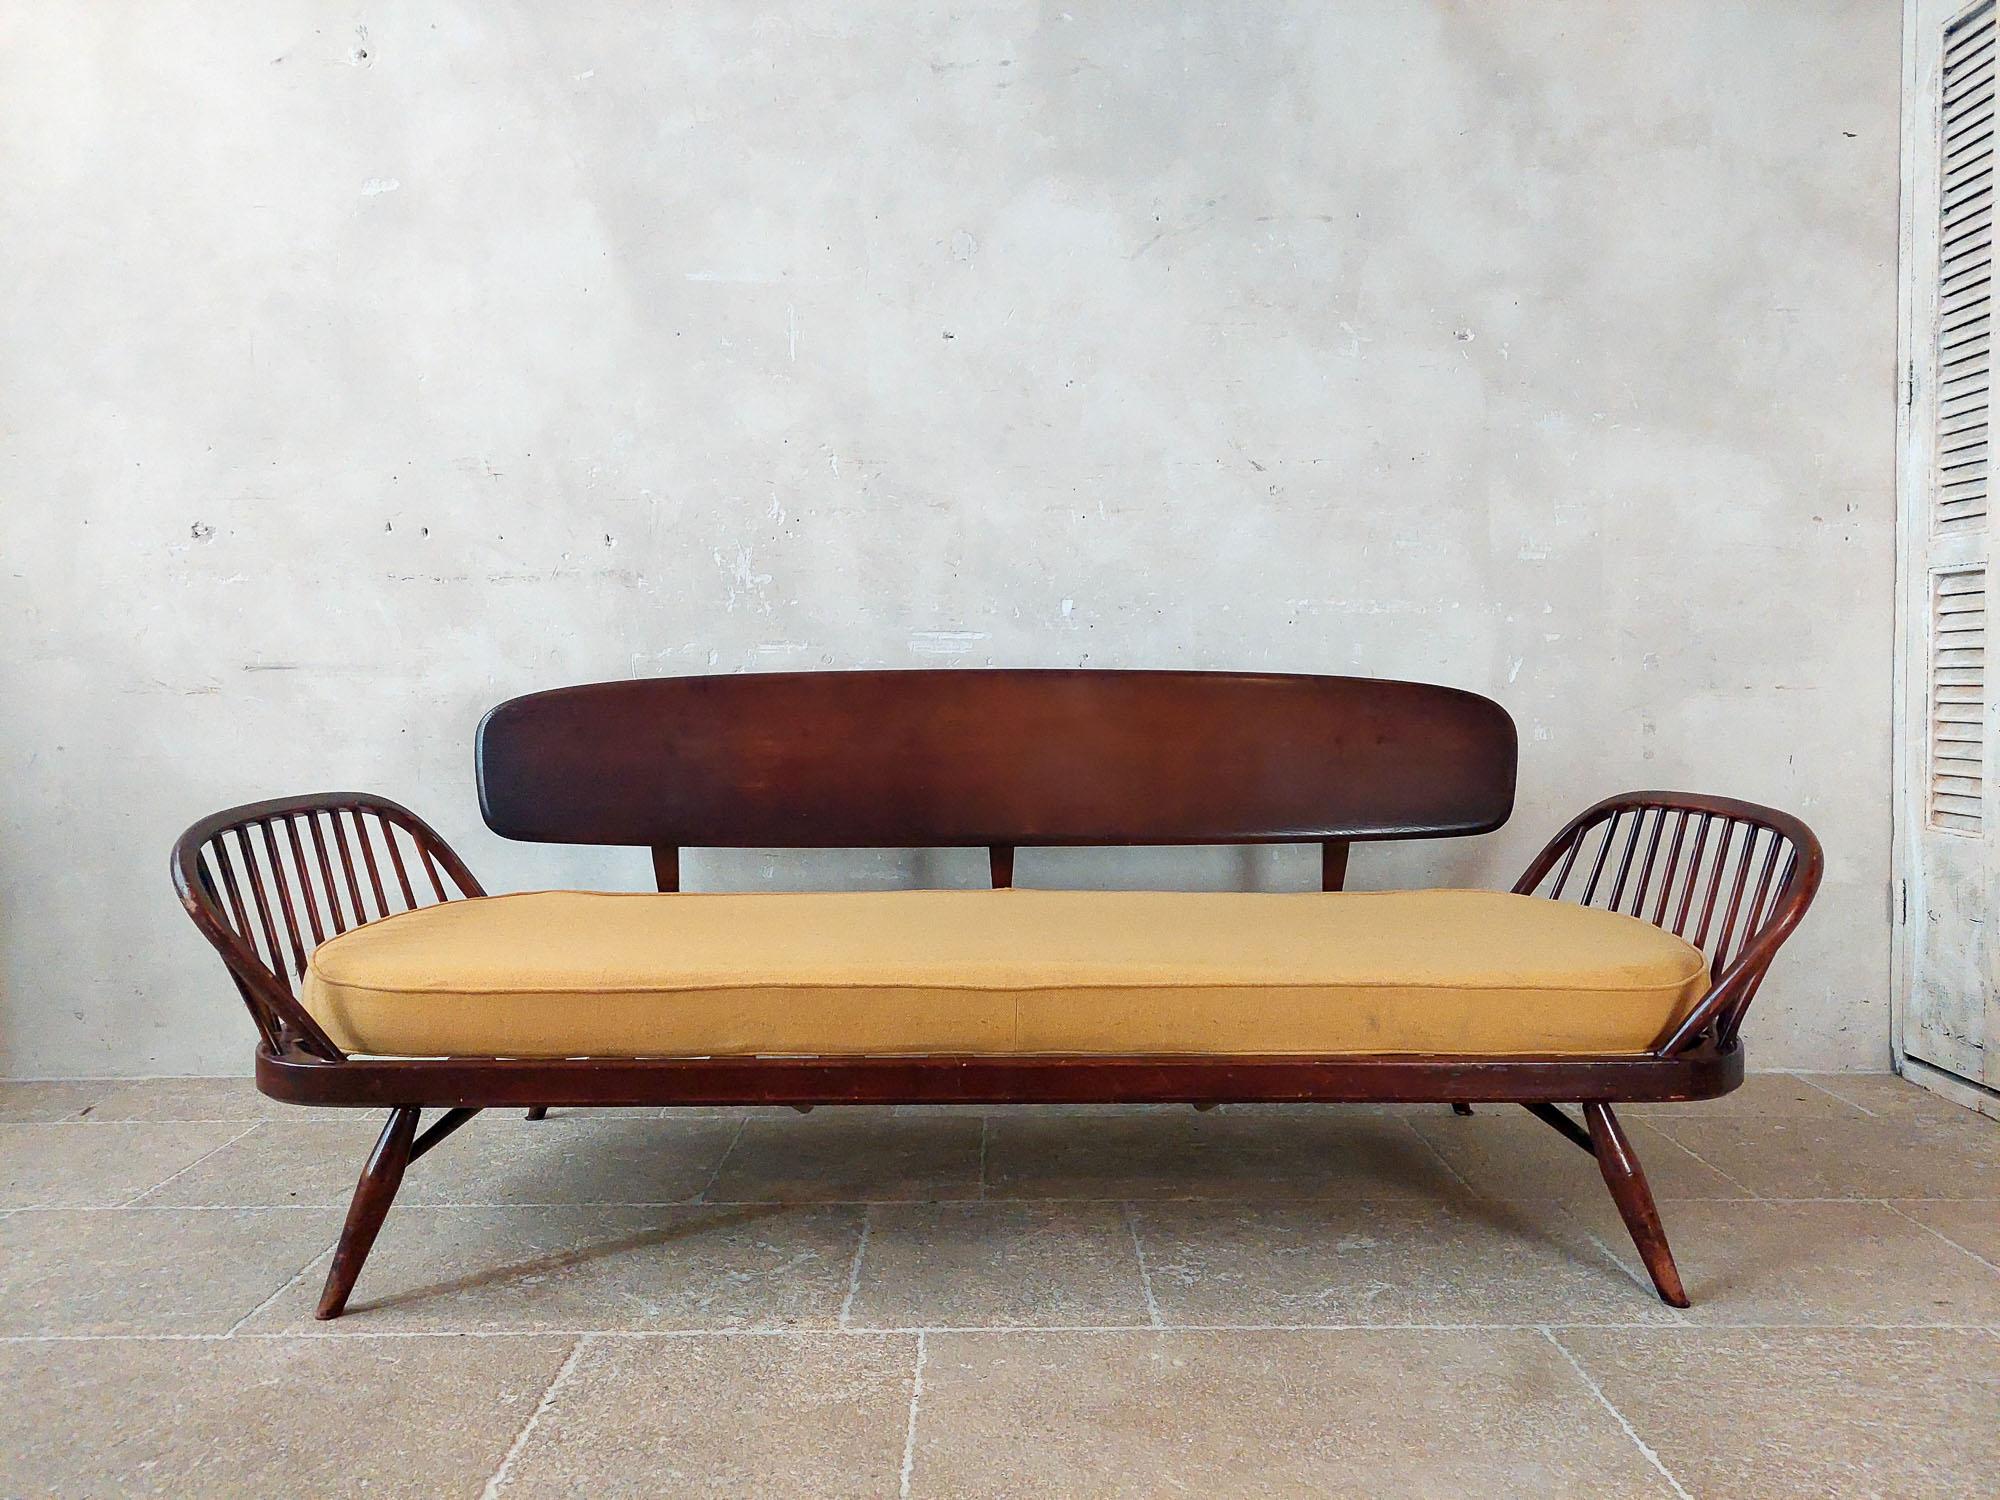 Canapé Ercol (Studio Couch) du milieu du siècle dernier, conçu par Lucian Ercolani vers les années 1960.

Le cadre et le dossier du canapé sont en orme massif. Le dossier est facilement amovible, ce qui vous permet d'utiliser ce canapé vintage comme